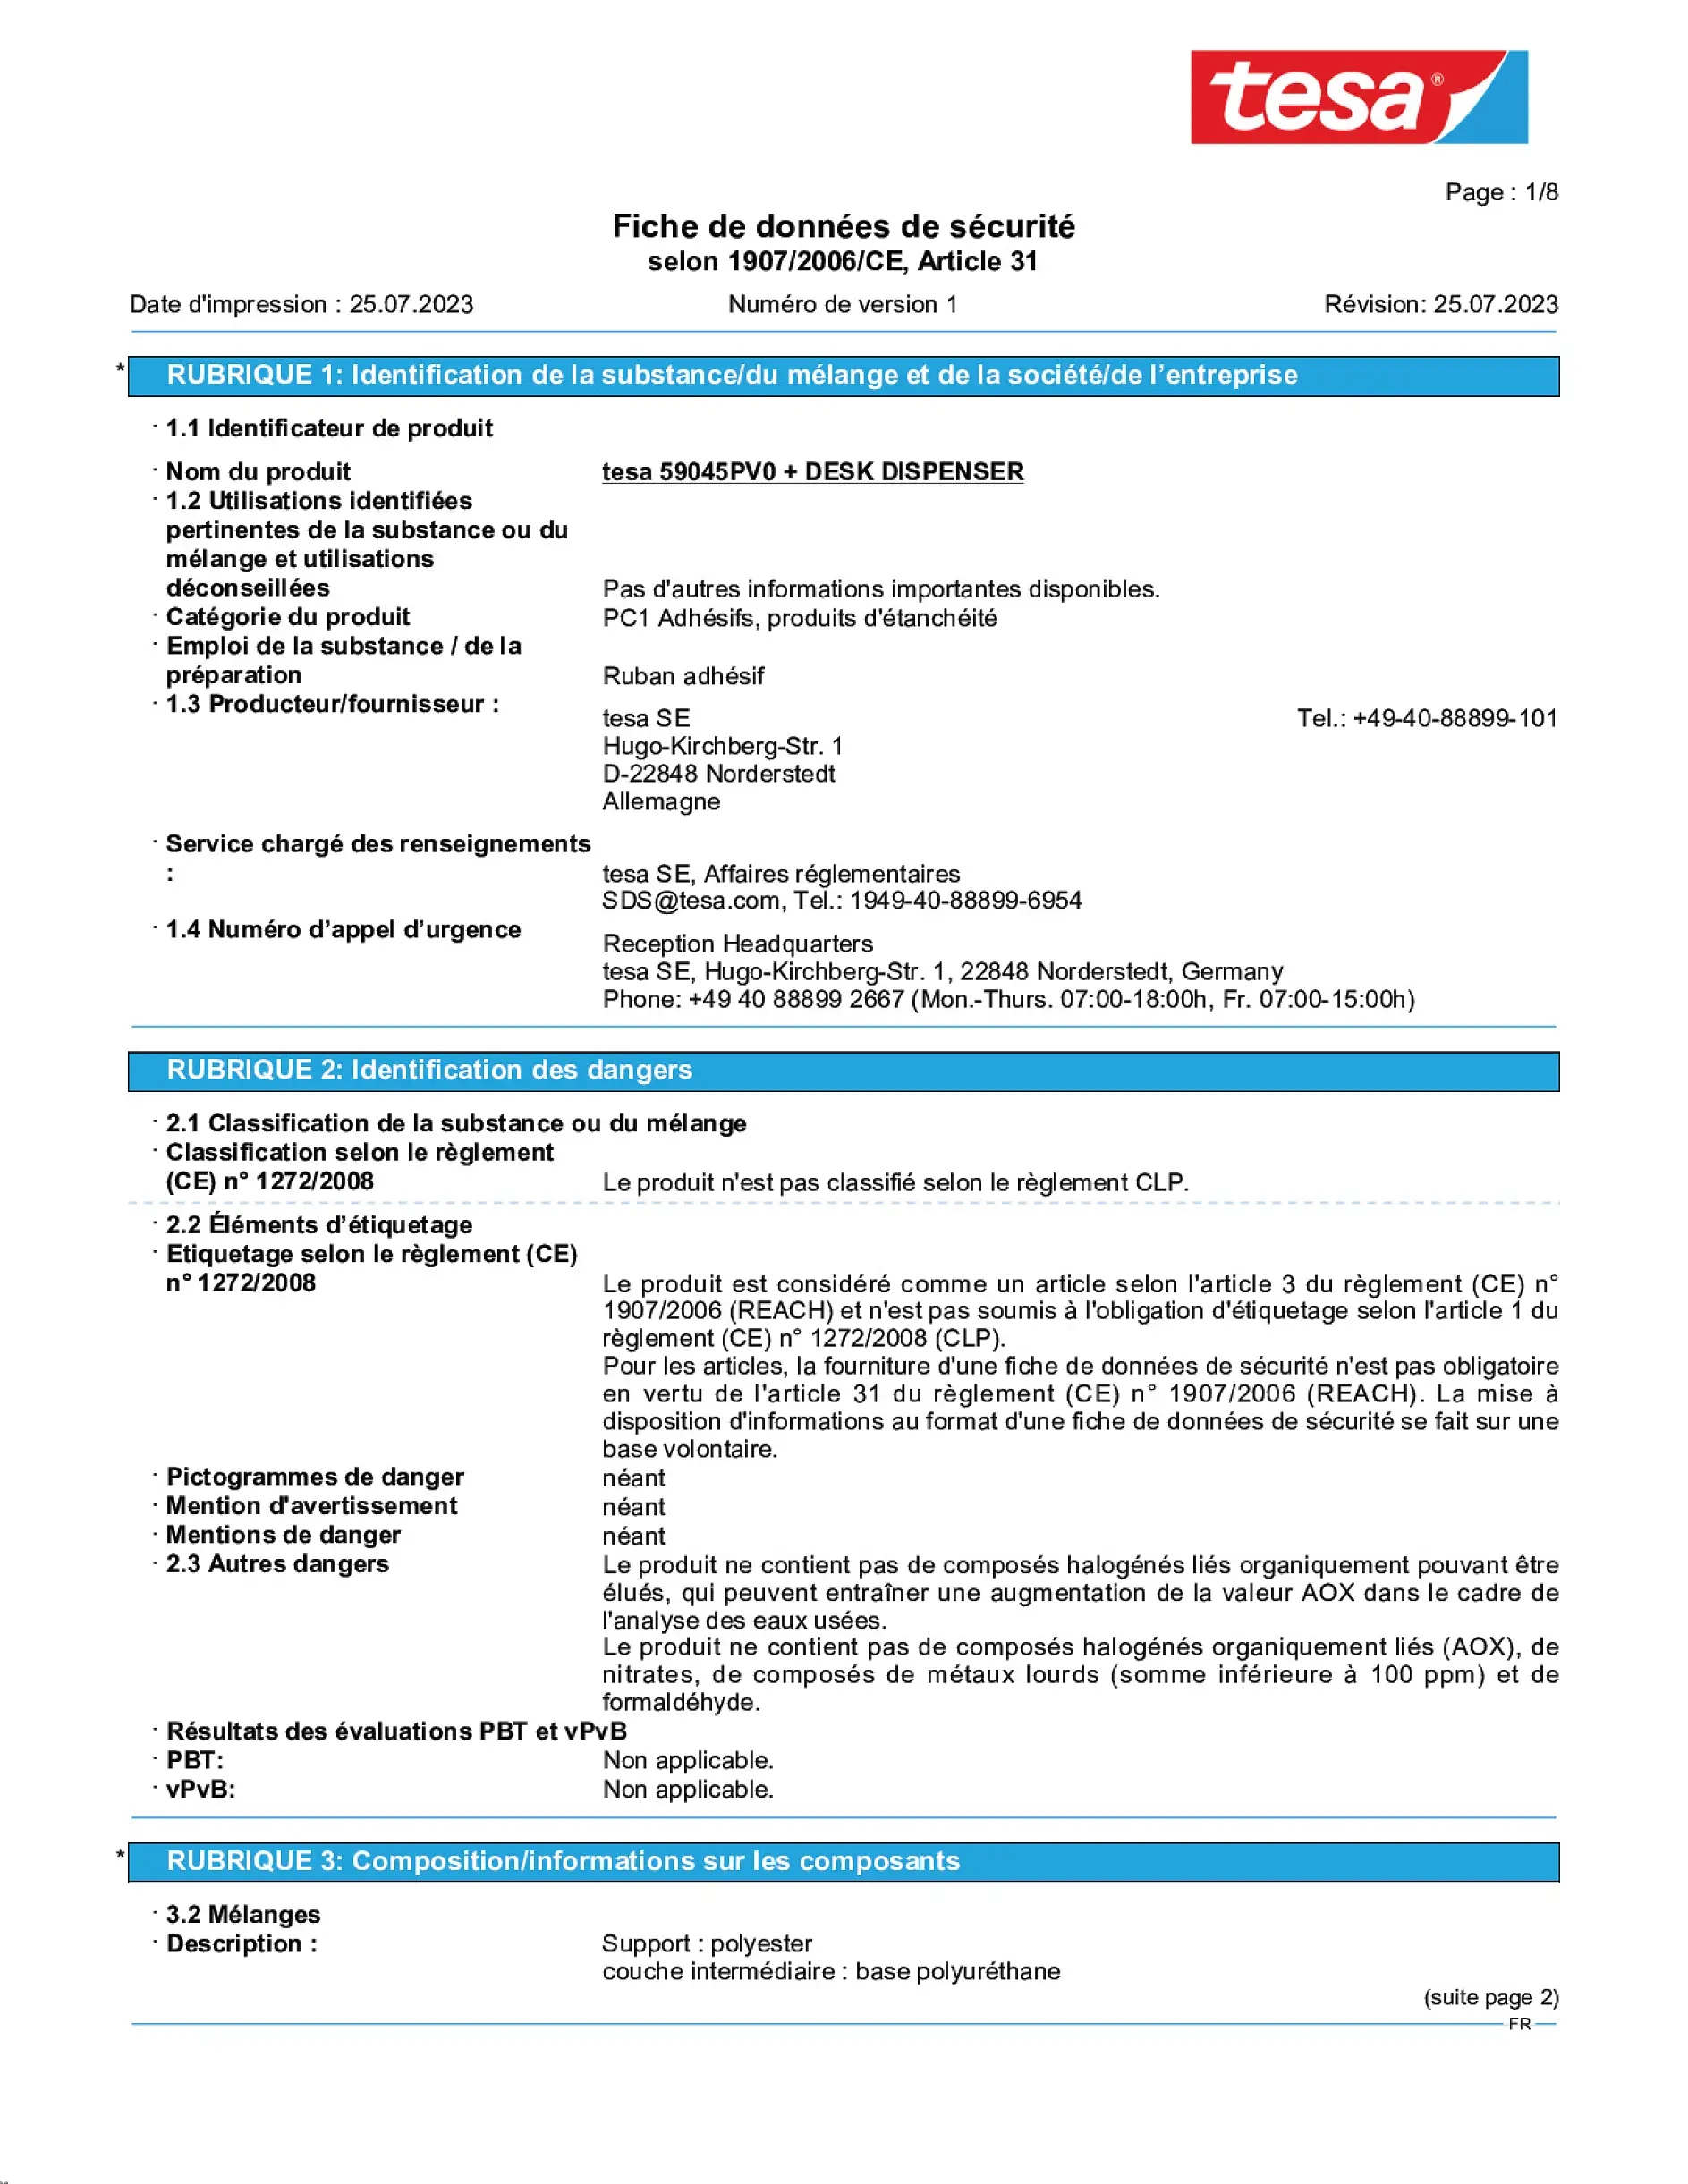 Safety data sheet_tesafilm® 59045_fr-FR_v1